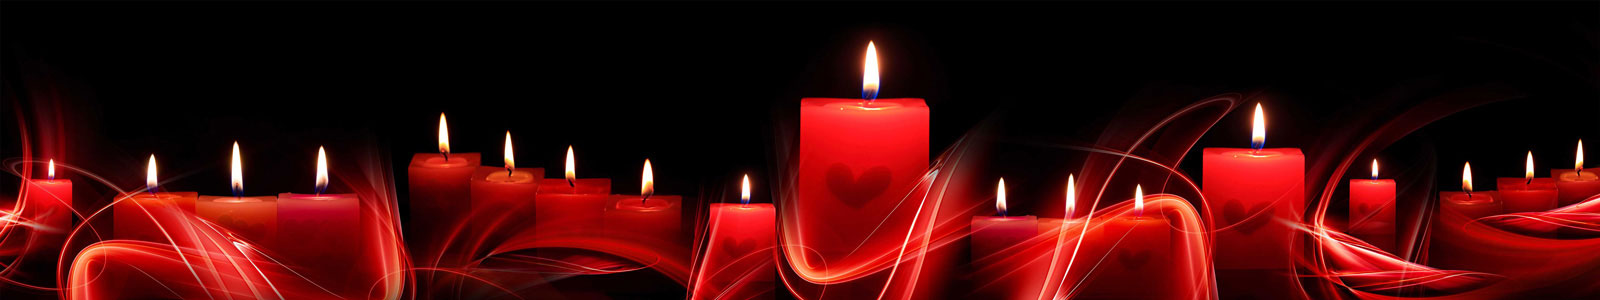 №5424 - Романтический вечер с ароматом красных свечей